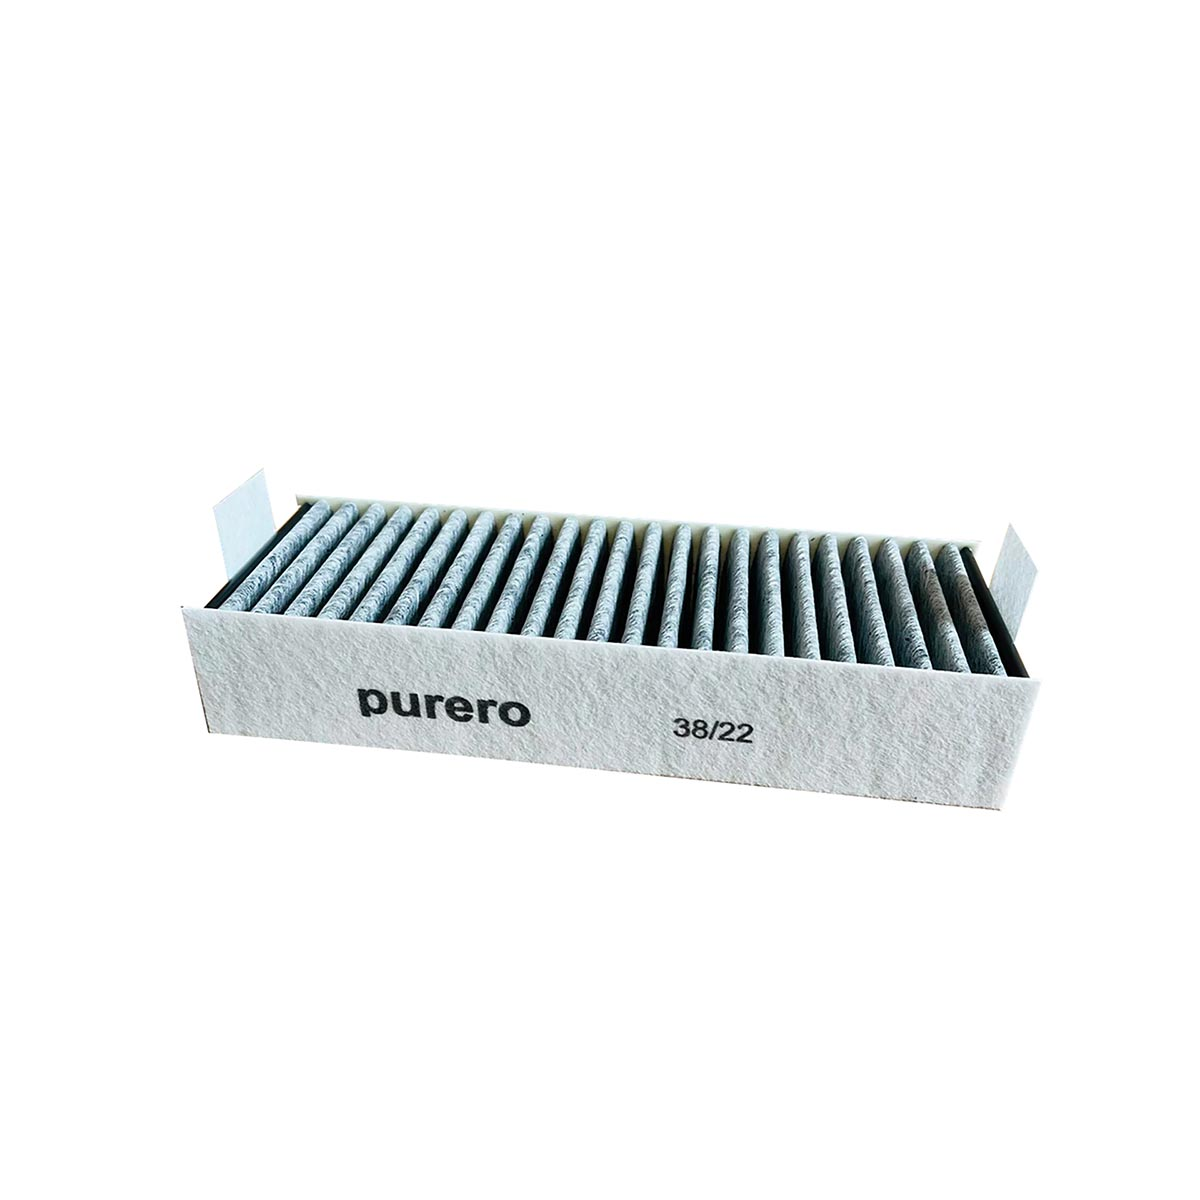 Neff Z821VR0 (4Stück) AIR2GO Aktivkohlefilter Ersatzfilter CleanAir Premium 17004806 für Purero